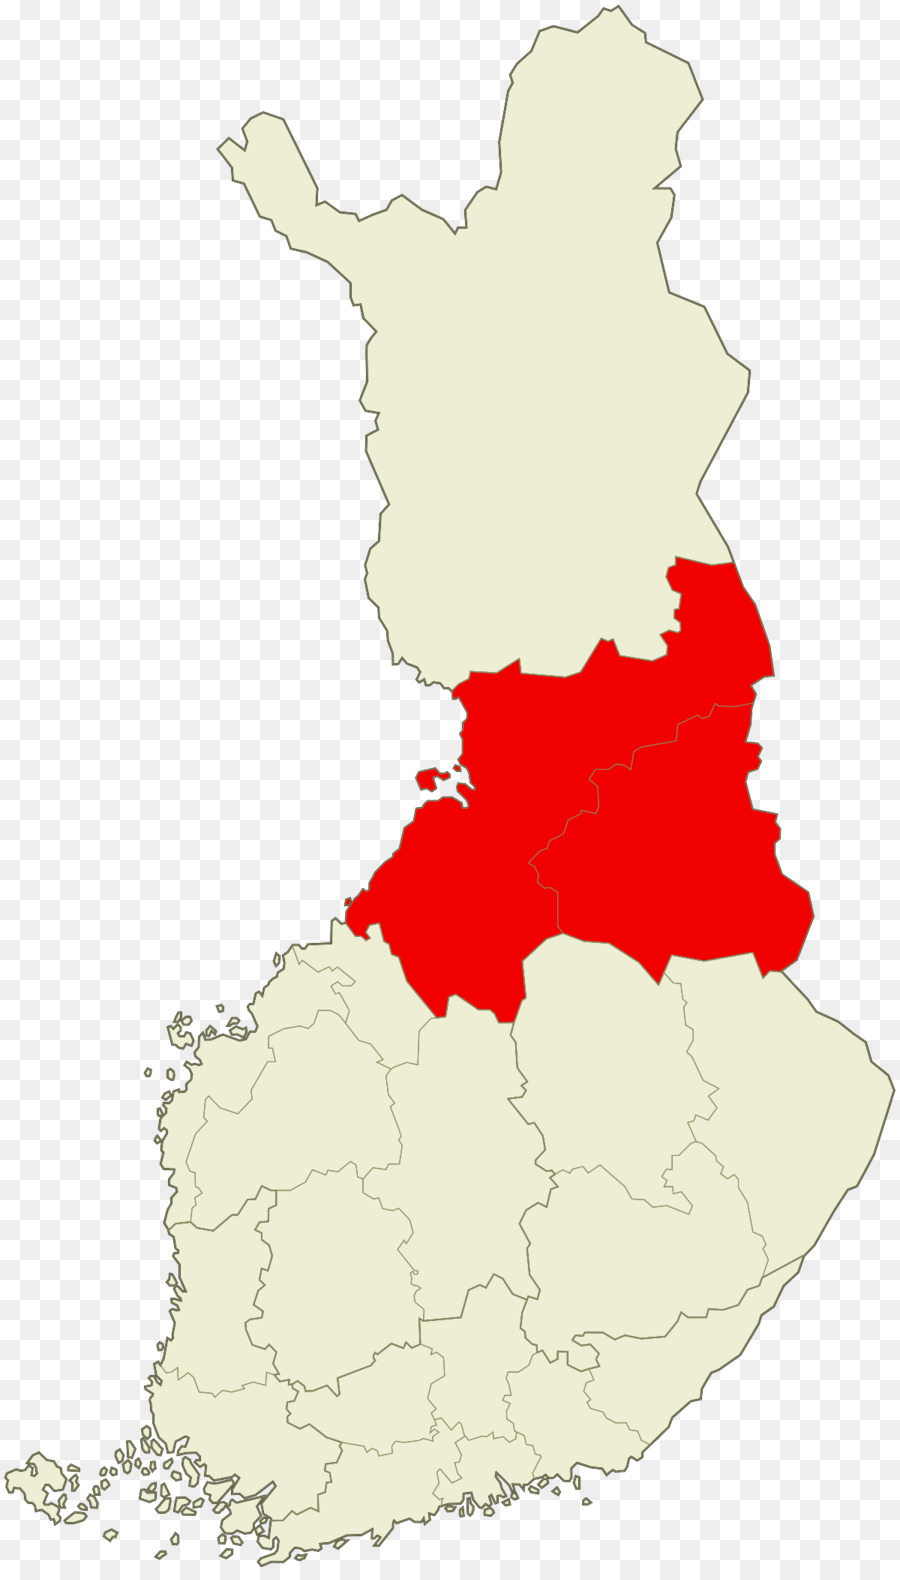 Oulu Central Finnland Southern Ostrobothnia Sub-Regionen in Finnland - Kainuu